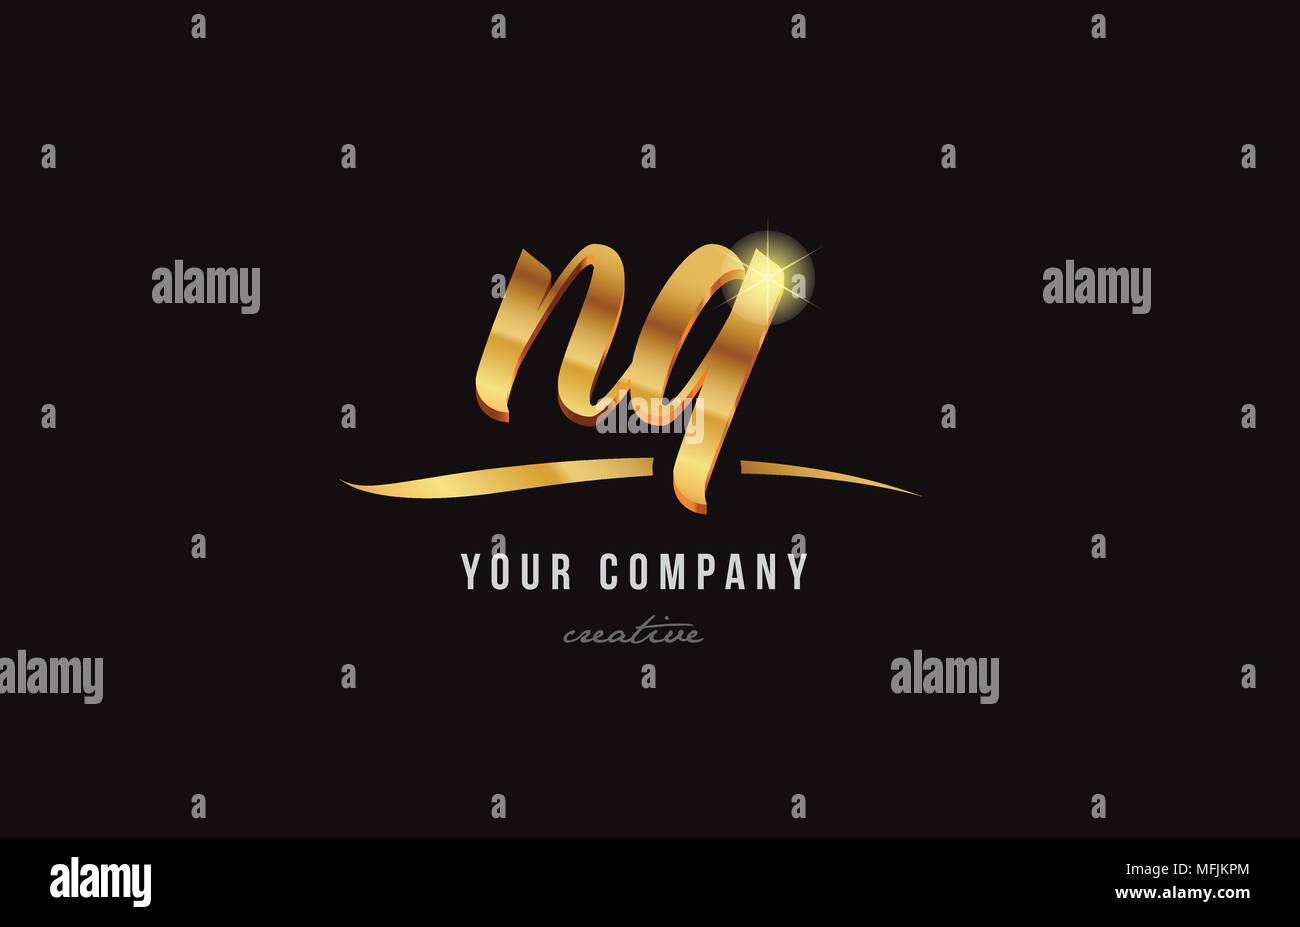 Oro golden lettere dell'alfabeto nq n q combinazione di logo design adatto per una società o business Illustrazione Vettoriale